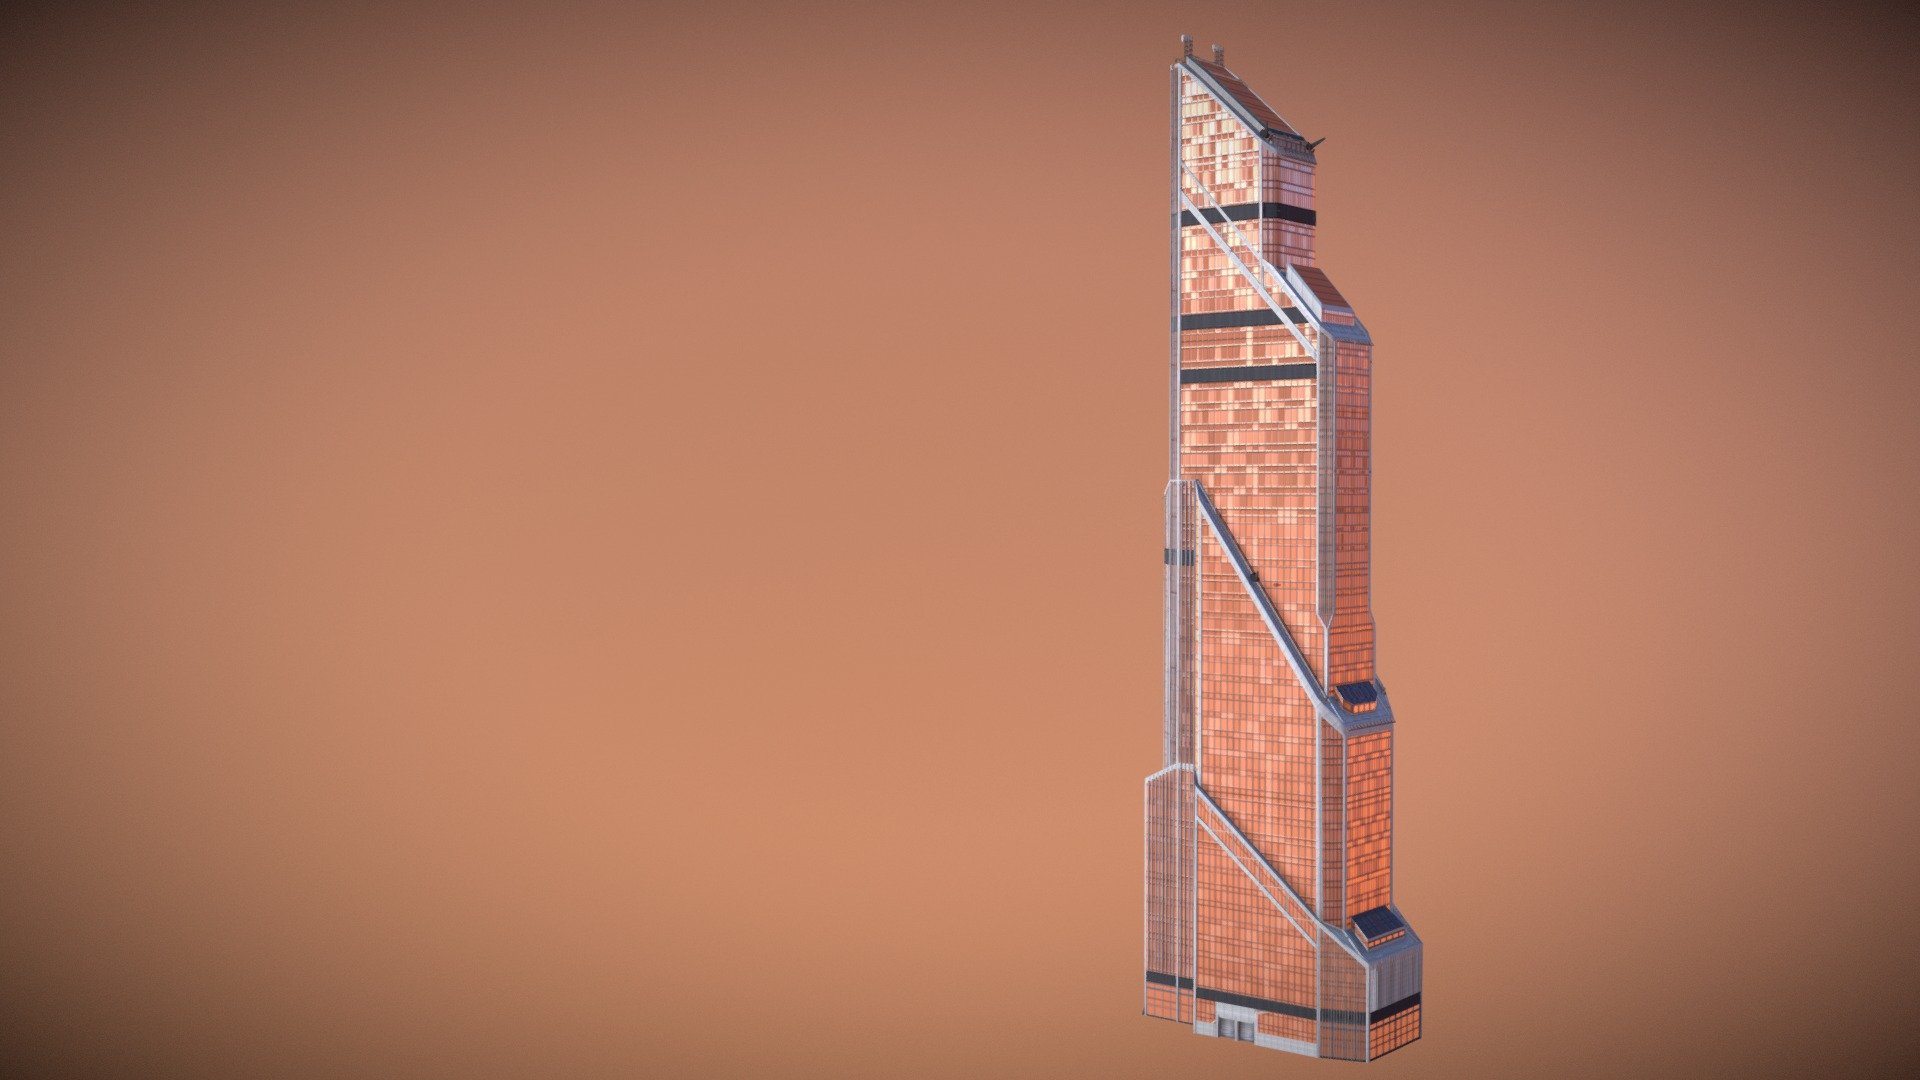 низкополигональная 3d модель, готовая к виртуальной реальности (VR), дополненная реальность (AR) и другое приложение реального времени.

Эта модель была сделана мной для игры Cities Skyline - масштаб текстуры. готовая карта UVW - Mercury City Tower - 3D model by The_Ping Pro (@niktord22) 3d model